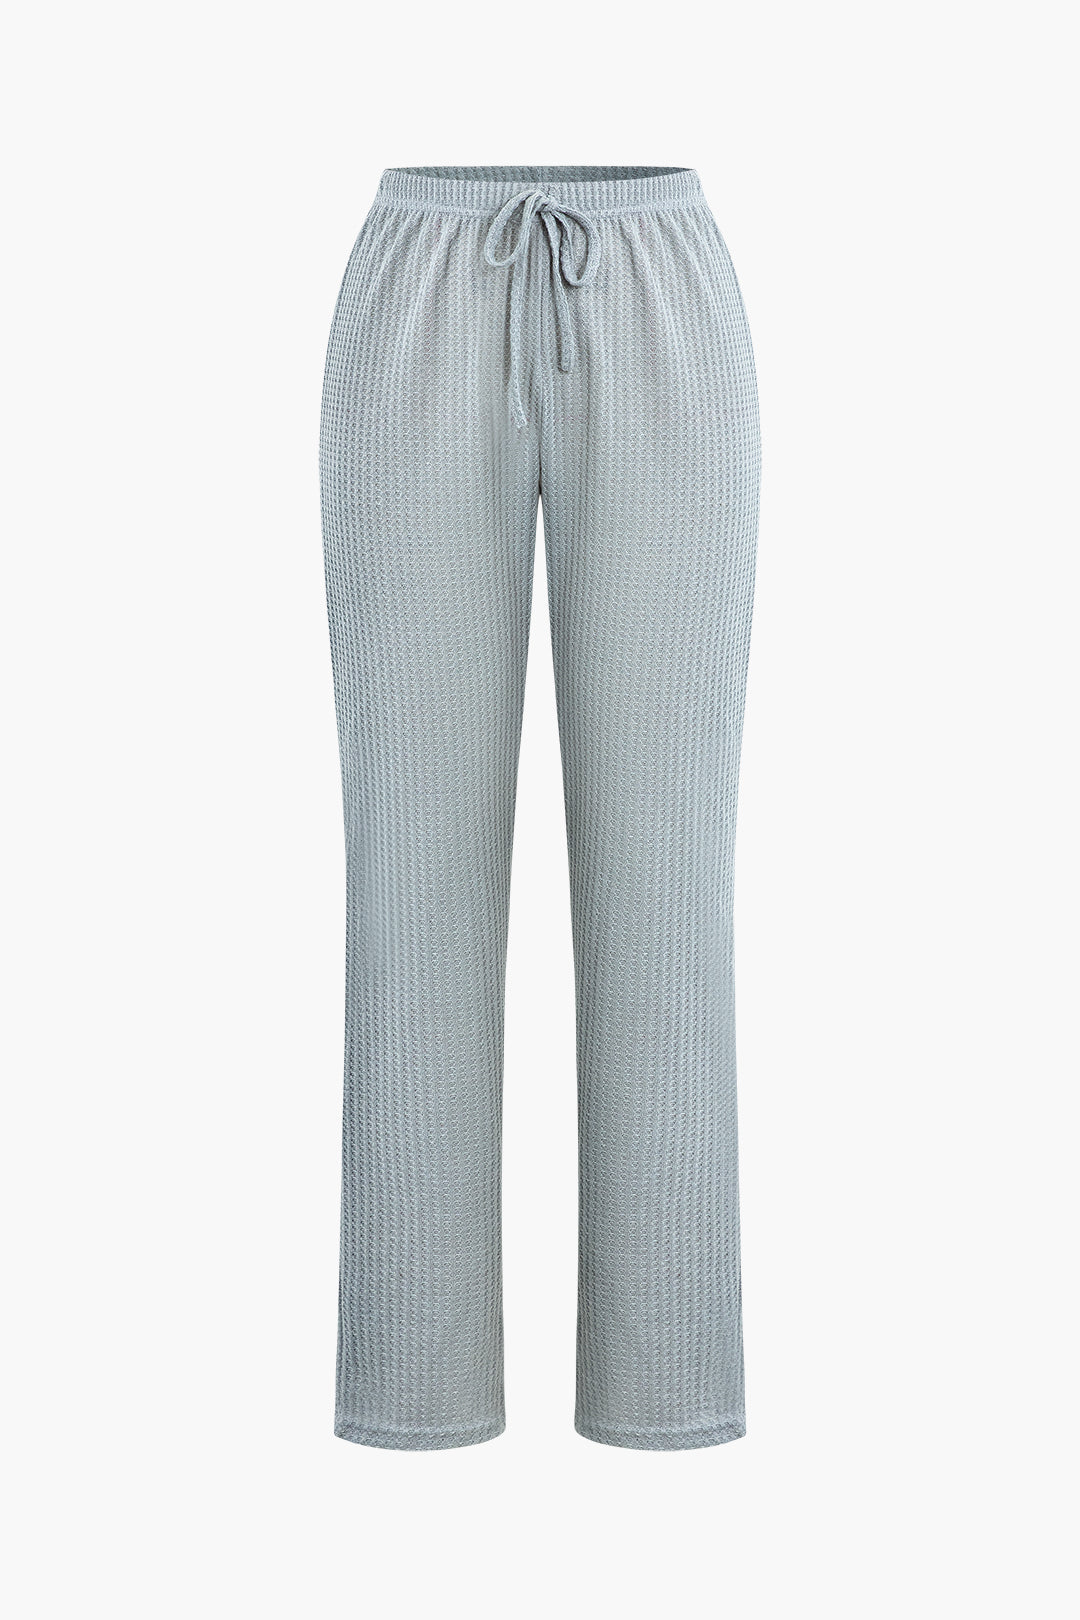 Basic Waffle Cami Top And Drawstring Pants And Long Sleeve Cardigan 3 Pcs Set